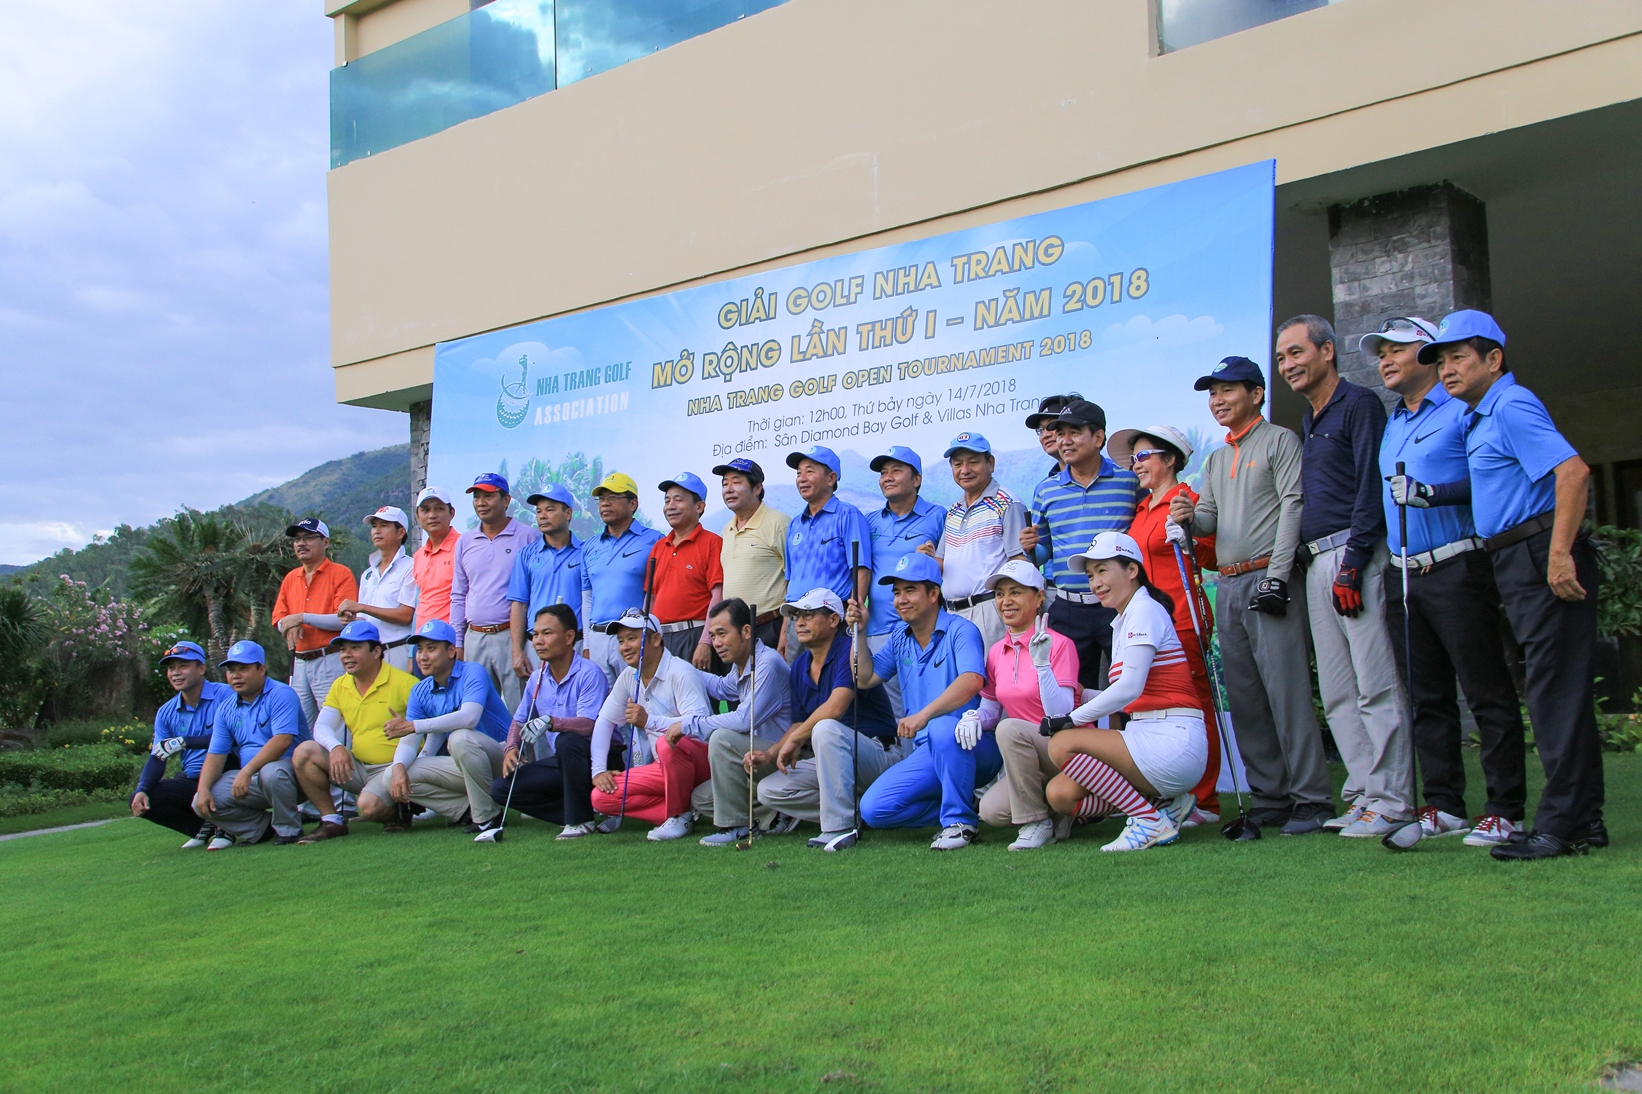 Hội golf Nha Trang - Khánh Hòa: 'Vượt khó để phát triển'